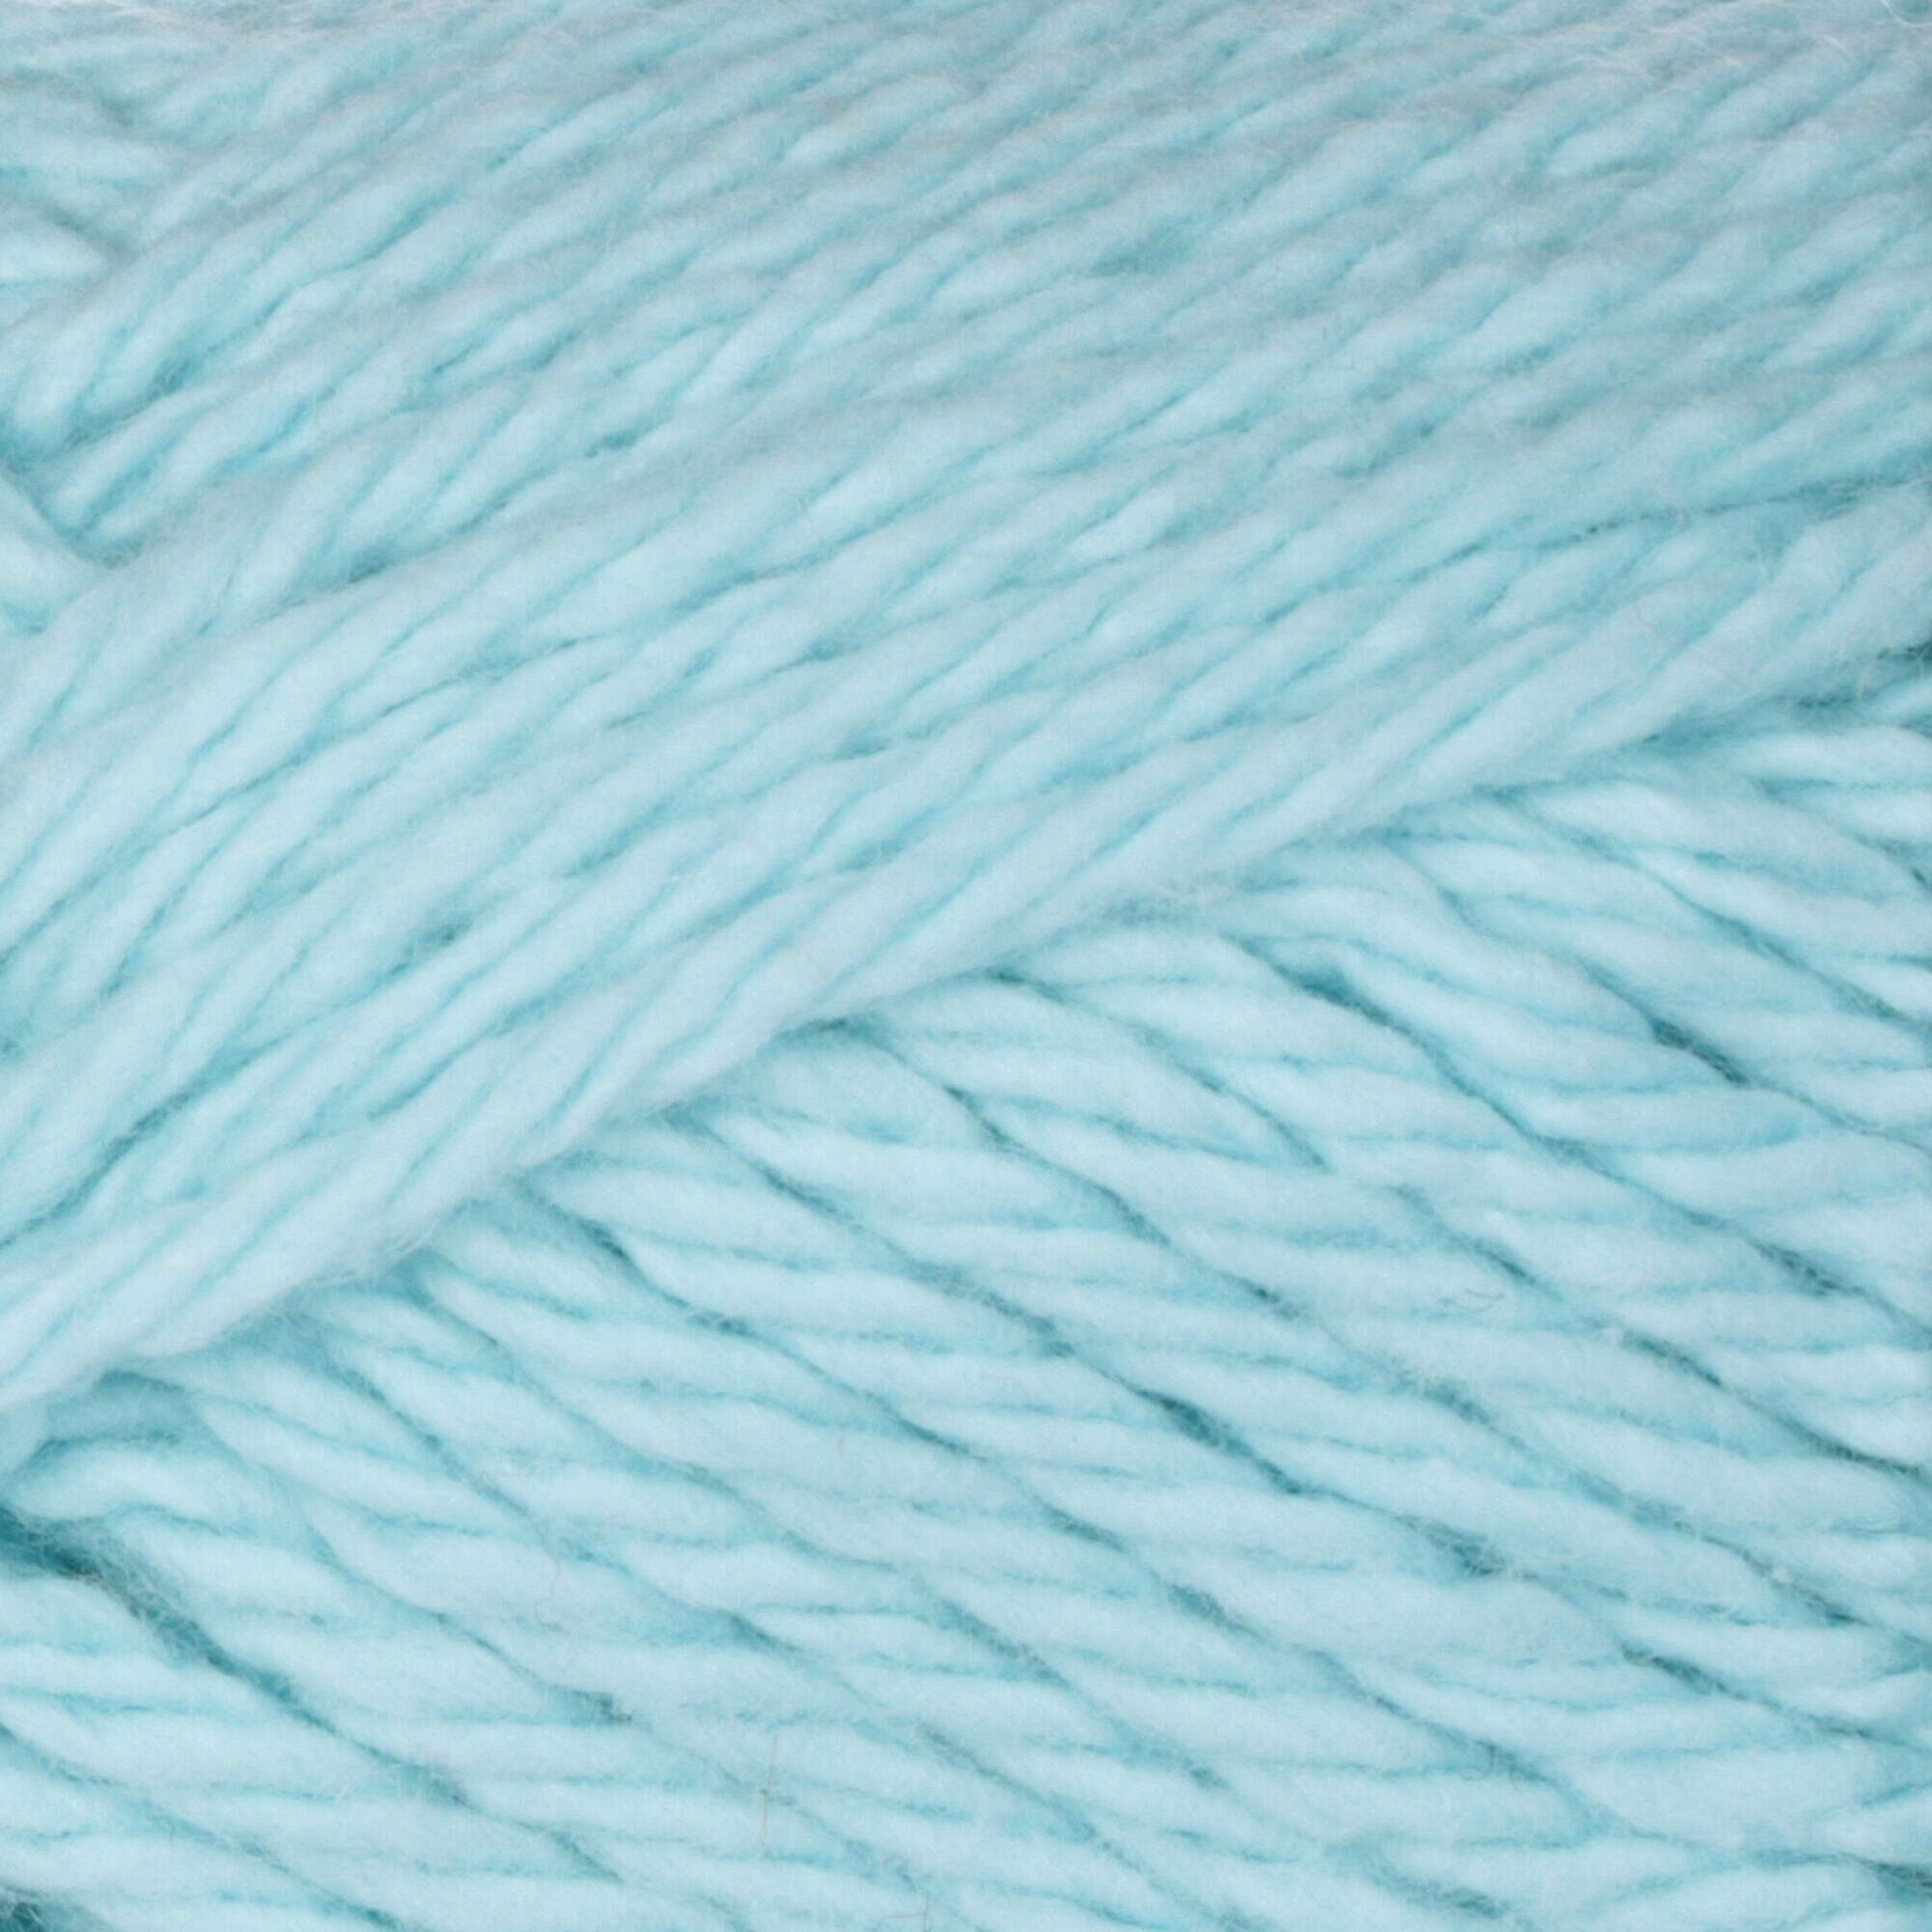 Bernat Handicrafter Cotton Yarn - Clearance Shades